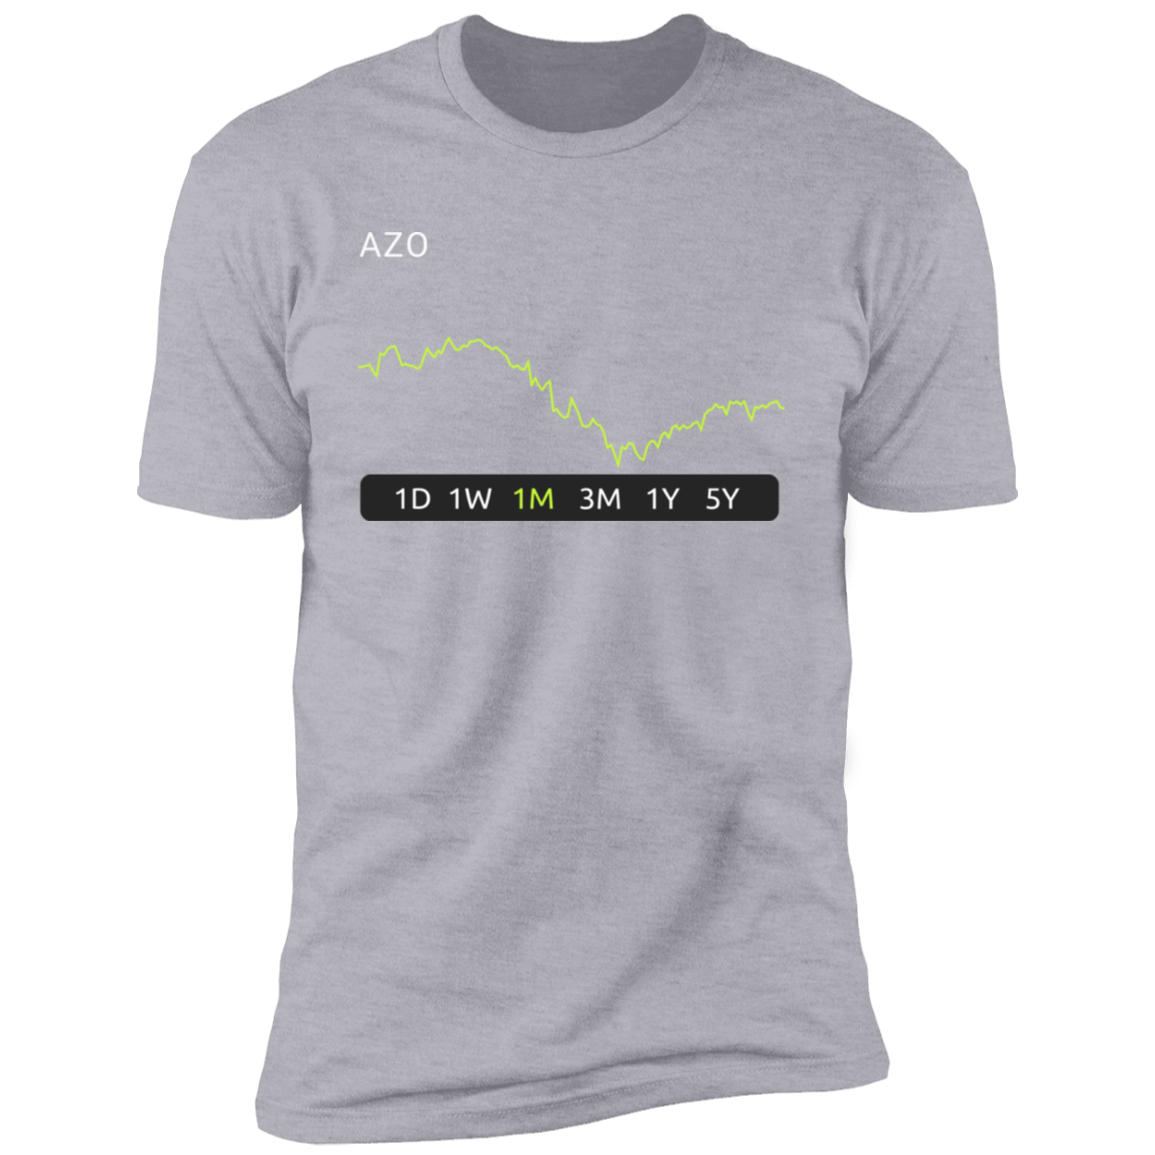 AZO Stock 1m Premium T-Shirt